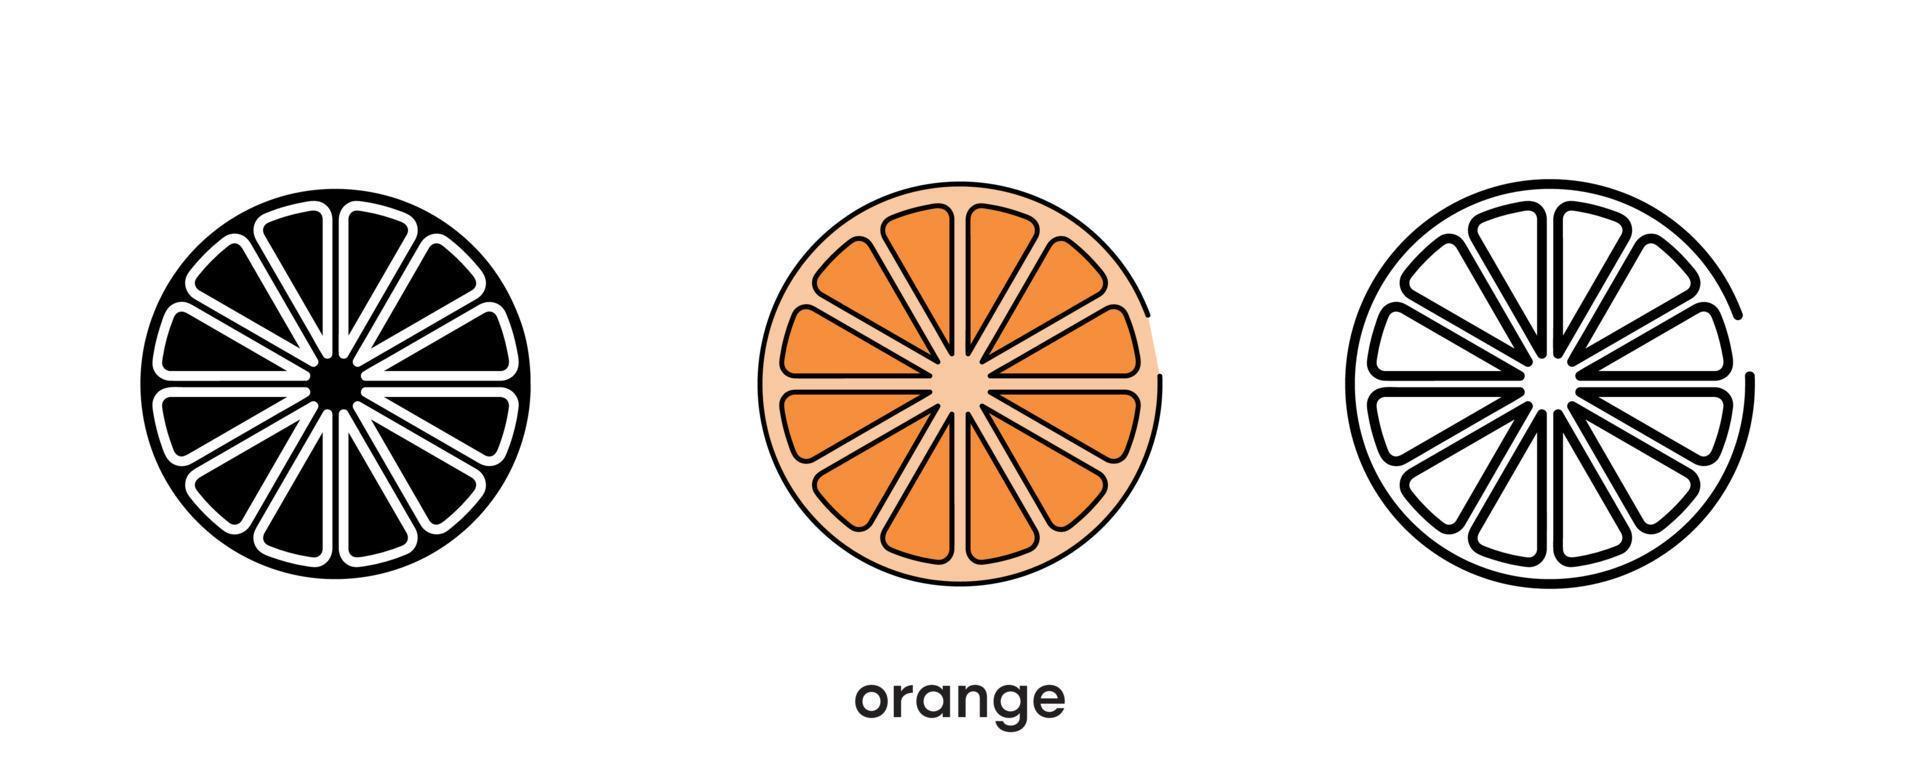 oranje pictogram ontwerp. oranje pictogrammenset in silhouet, kleurrijk en lineair. fruit pictogram lijn vectorillustratie geïsoleerd op een schone achtergrond voor uw web mobiele applicatie logo ontwerp. moderne lijn. vector